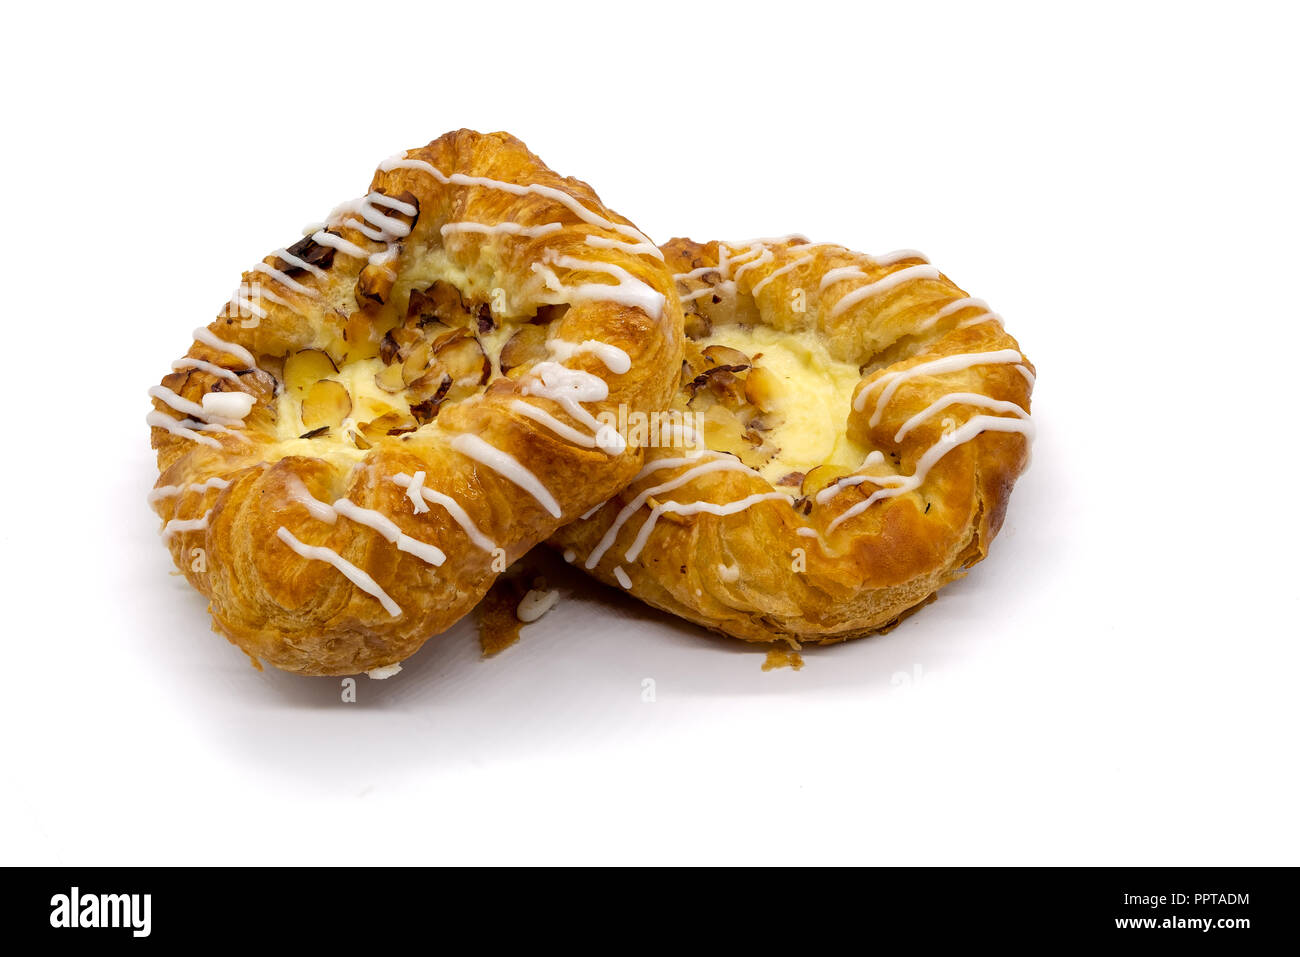 Crema di limone & Pastry isolato su uno sfondo bianco. Una buona immagine per un fornaio o pasticcere. Foto Stock